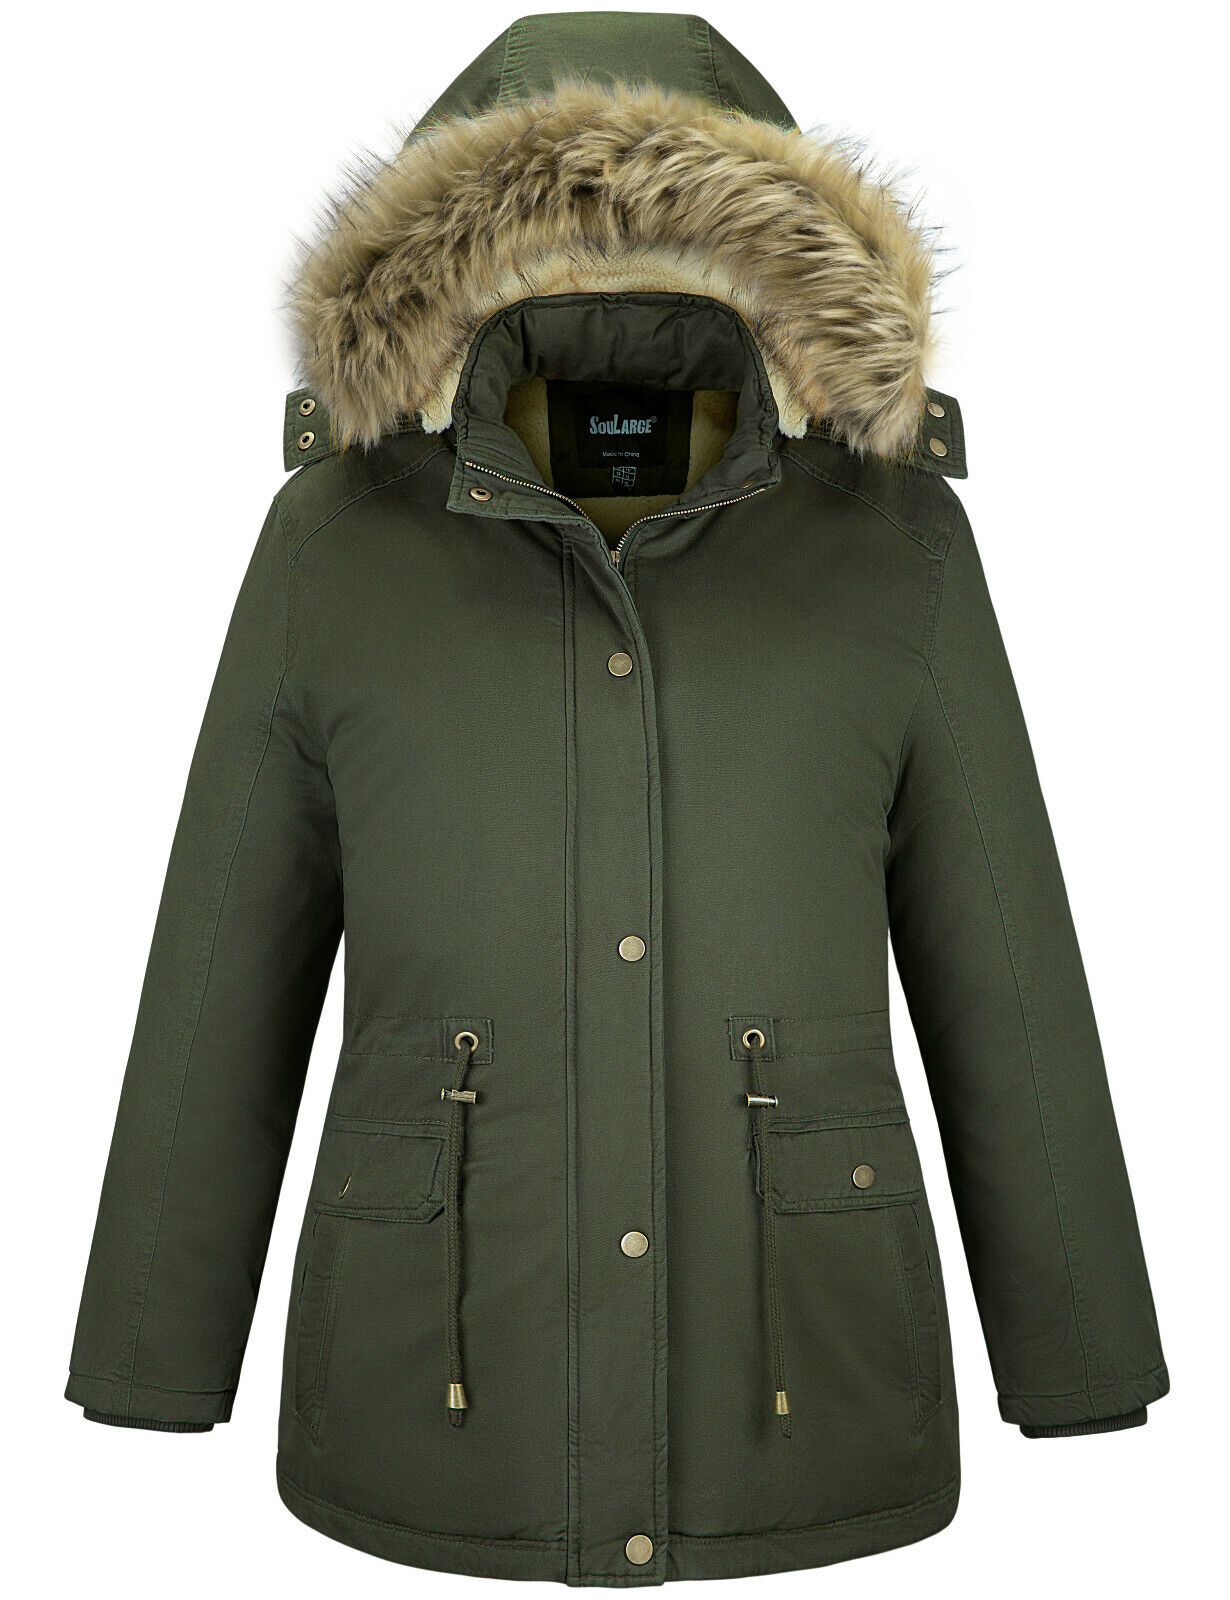 Soularge Women's Plus Size Parkas Winter Jacket Coats Lined 